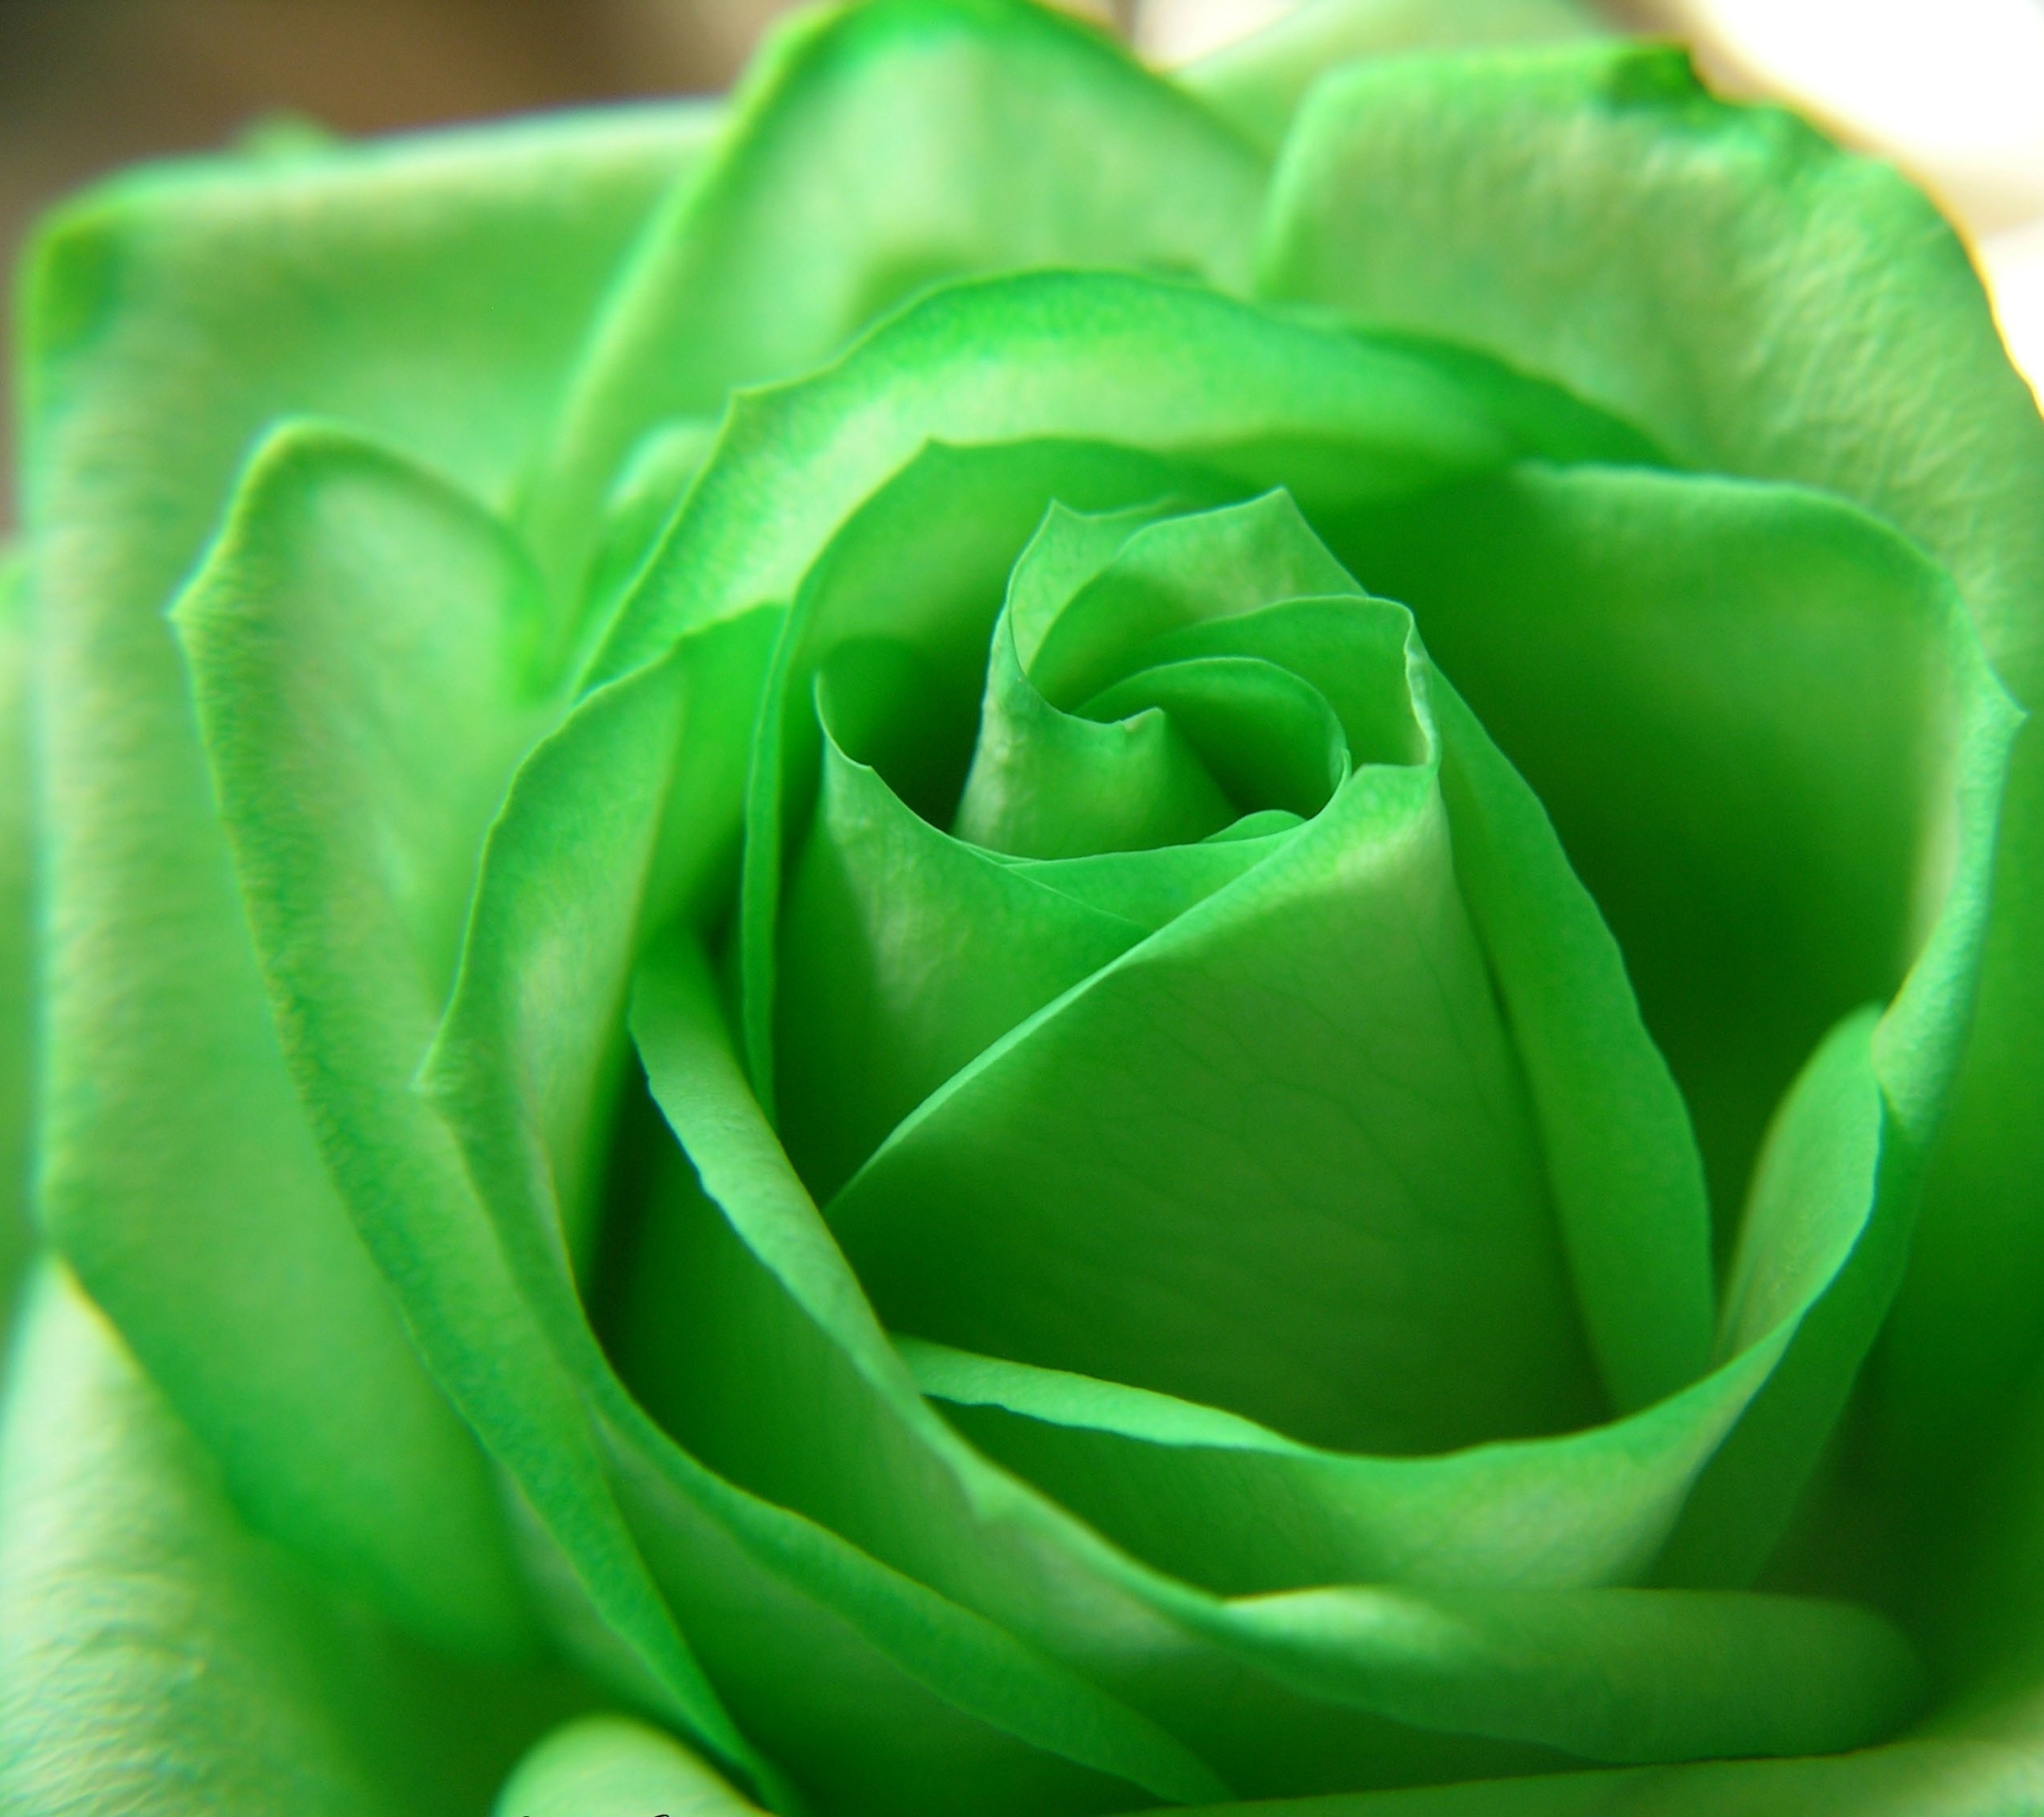 Скачать обои бесплатно Цветок, Роза, Зеленый, Пастель, Земля/природа, Флауэрсы картинка на рабочий стол ПК